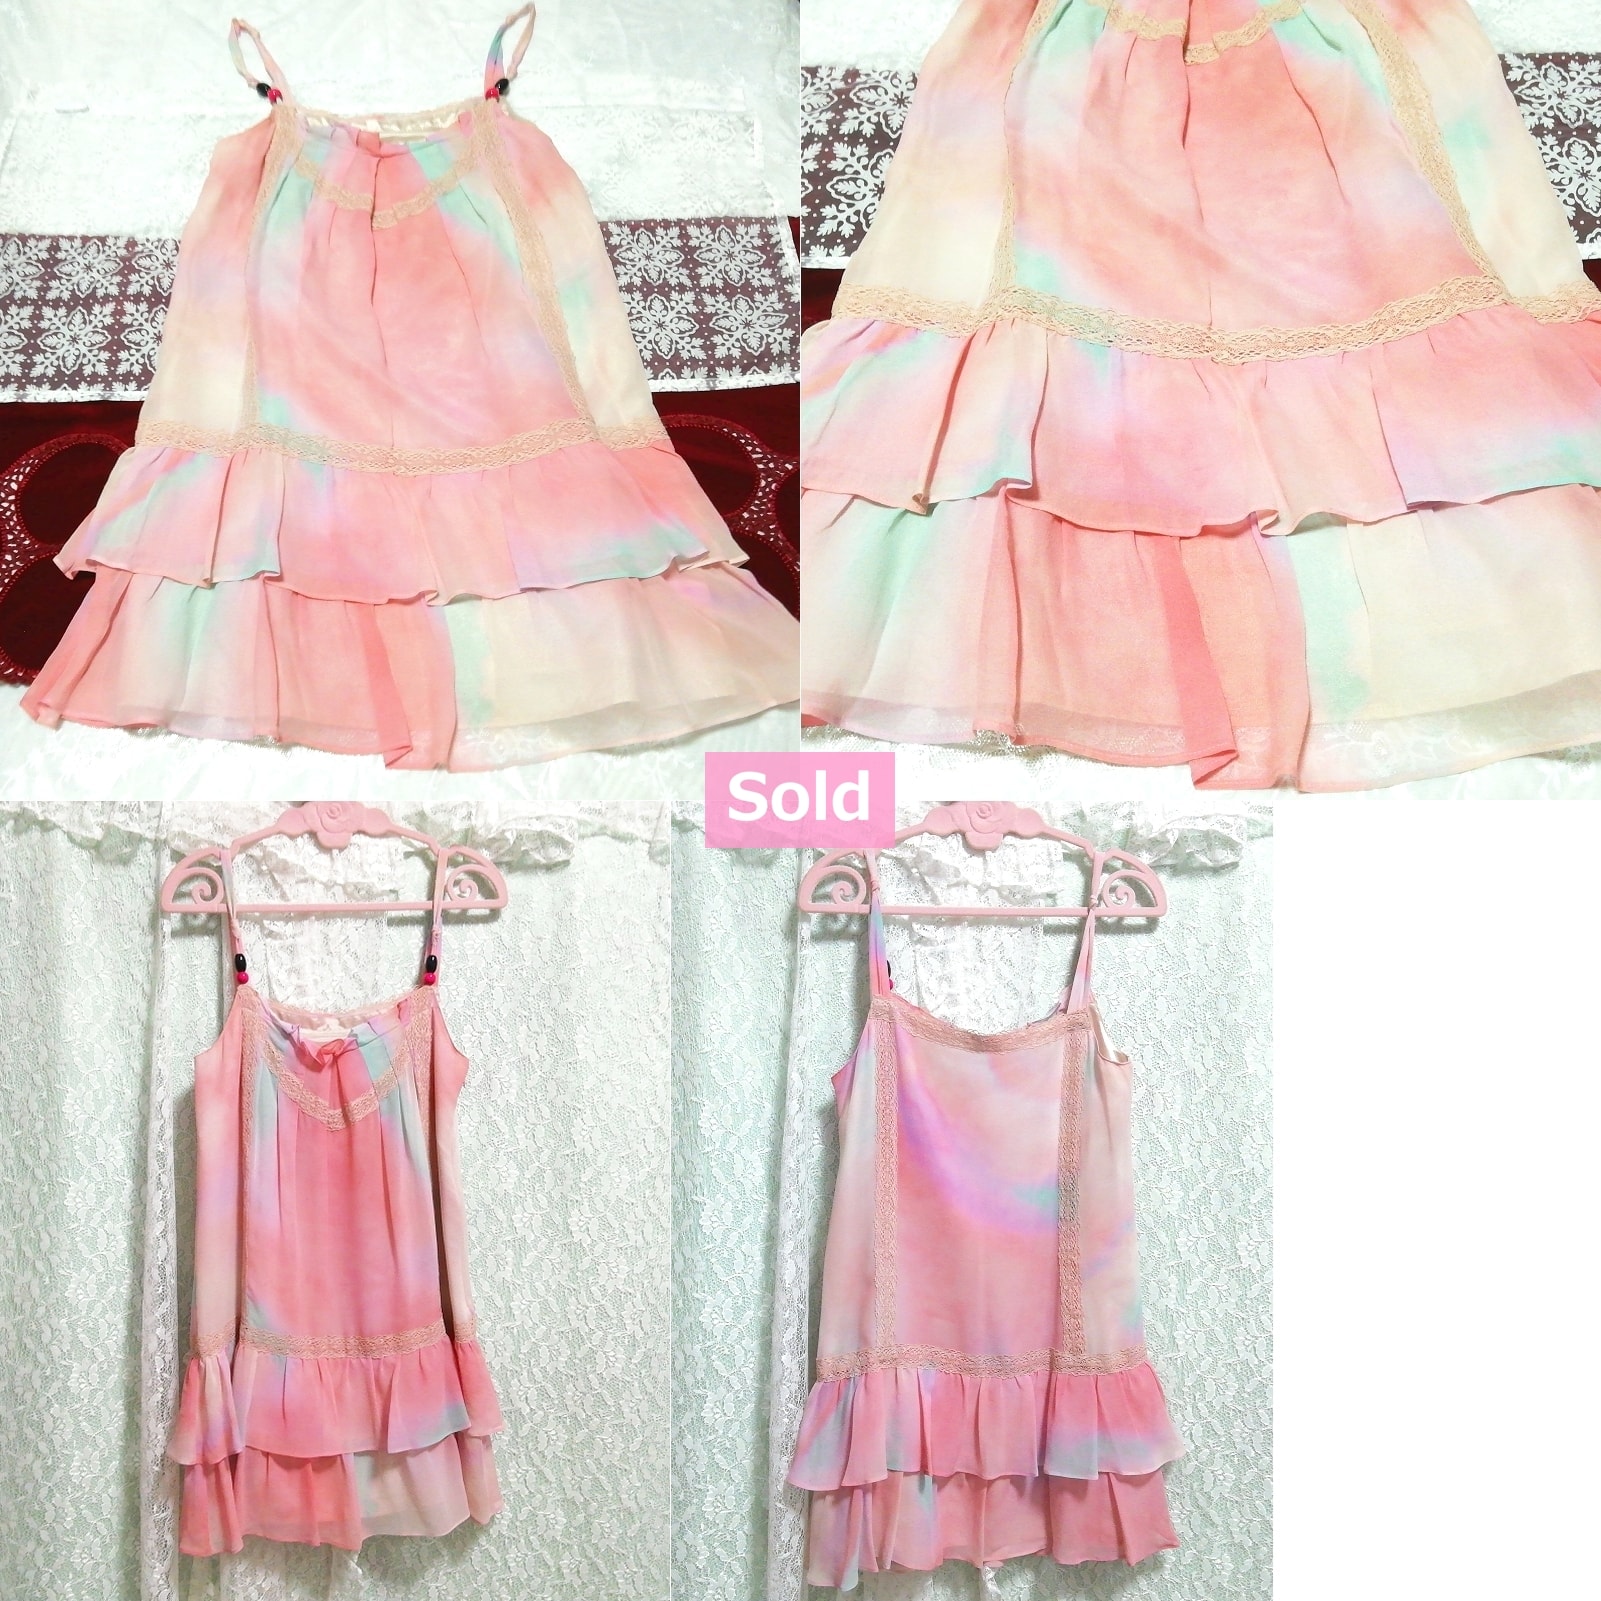 Negligee-Nachthemd, Camisole-Kleid, Babydoll-Kleid aus rosafarbenem Chiffon aus Seide, Mode, Frauenmode, Leibchen